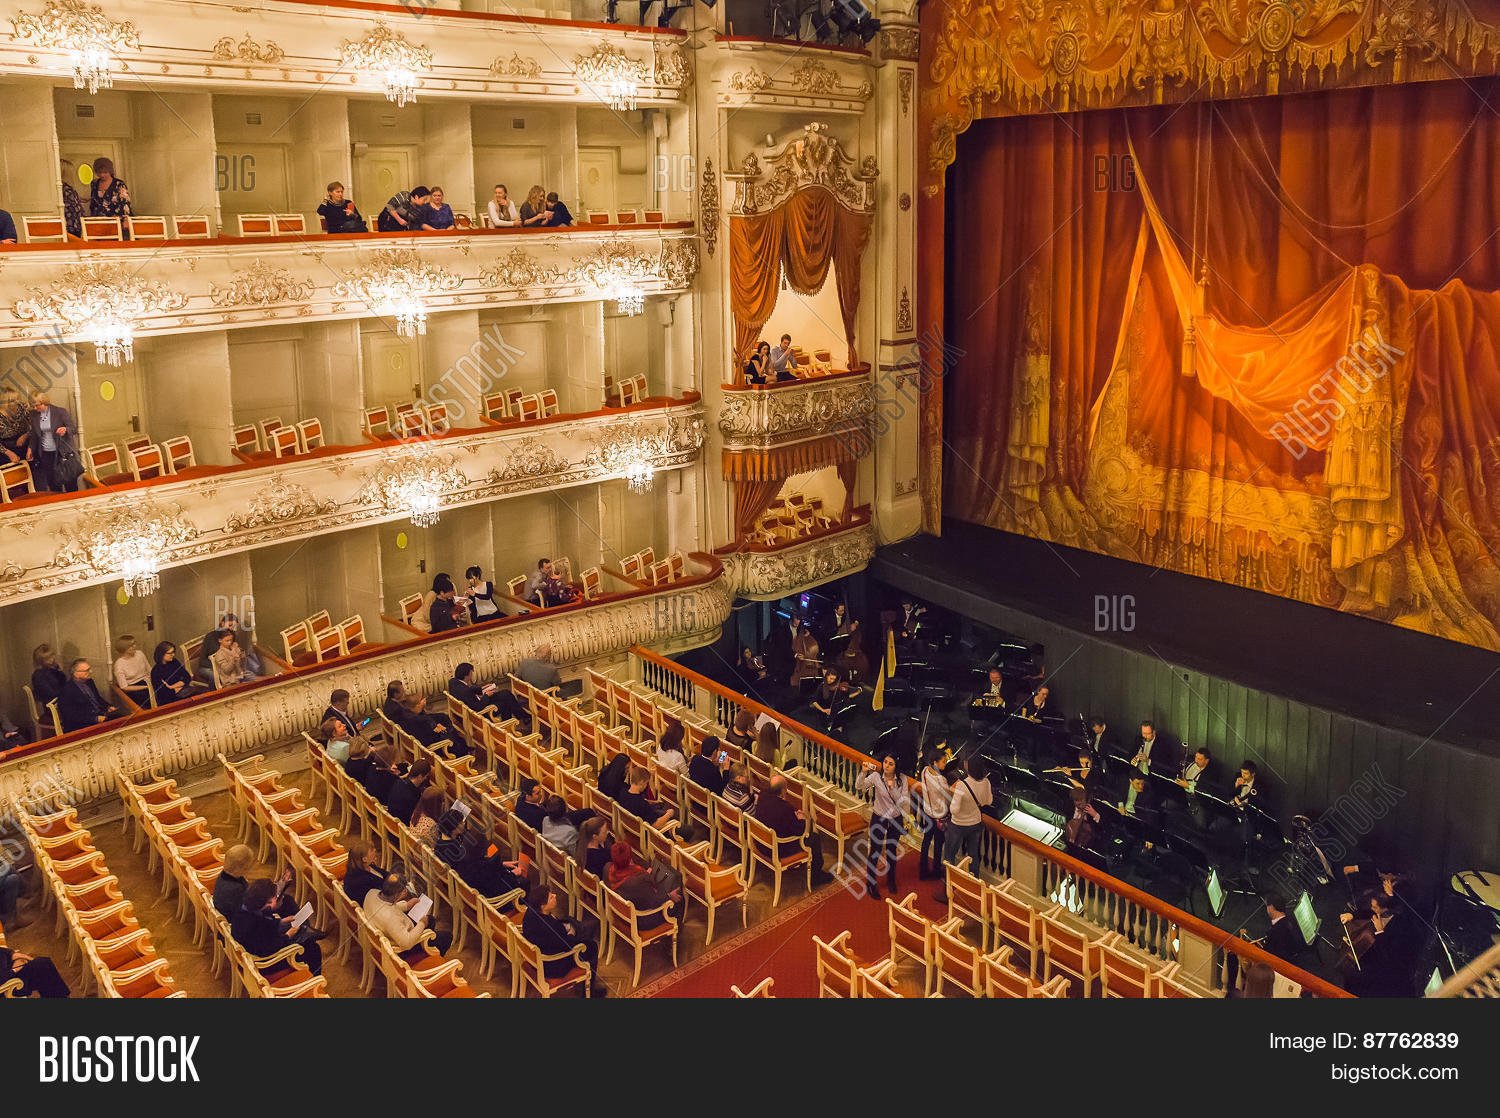 михайловский театр оперы и балета